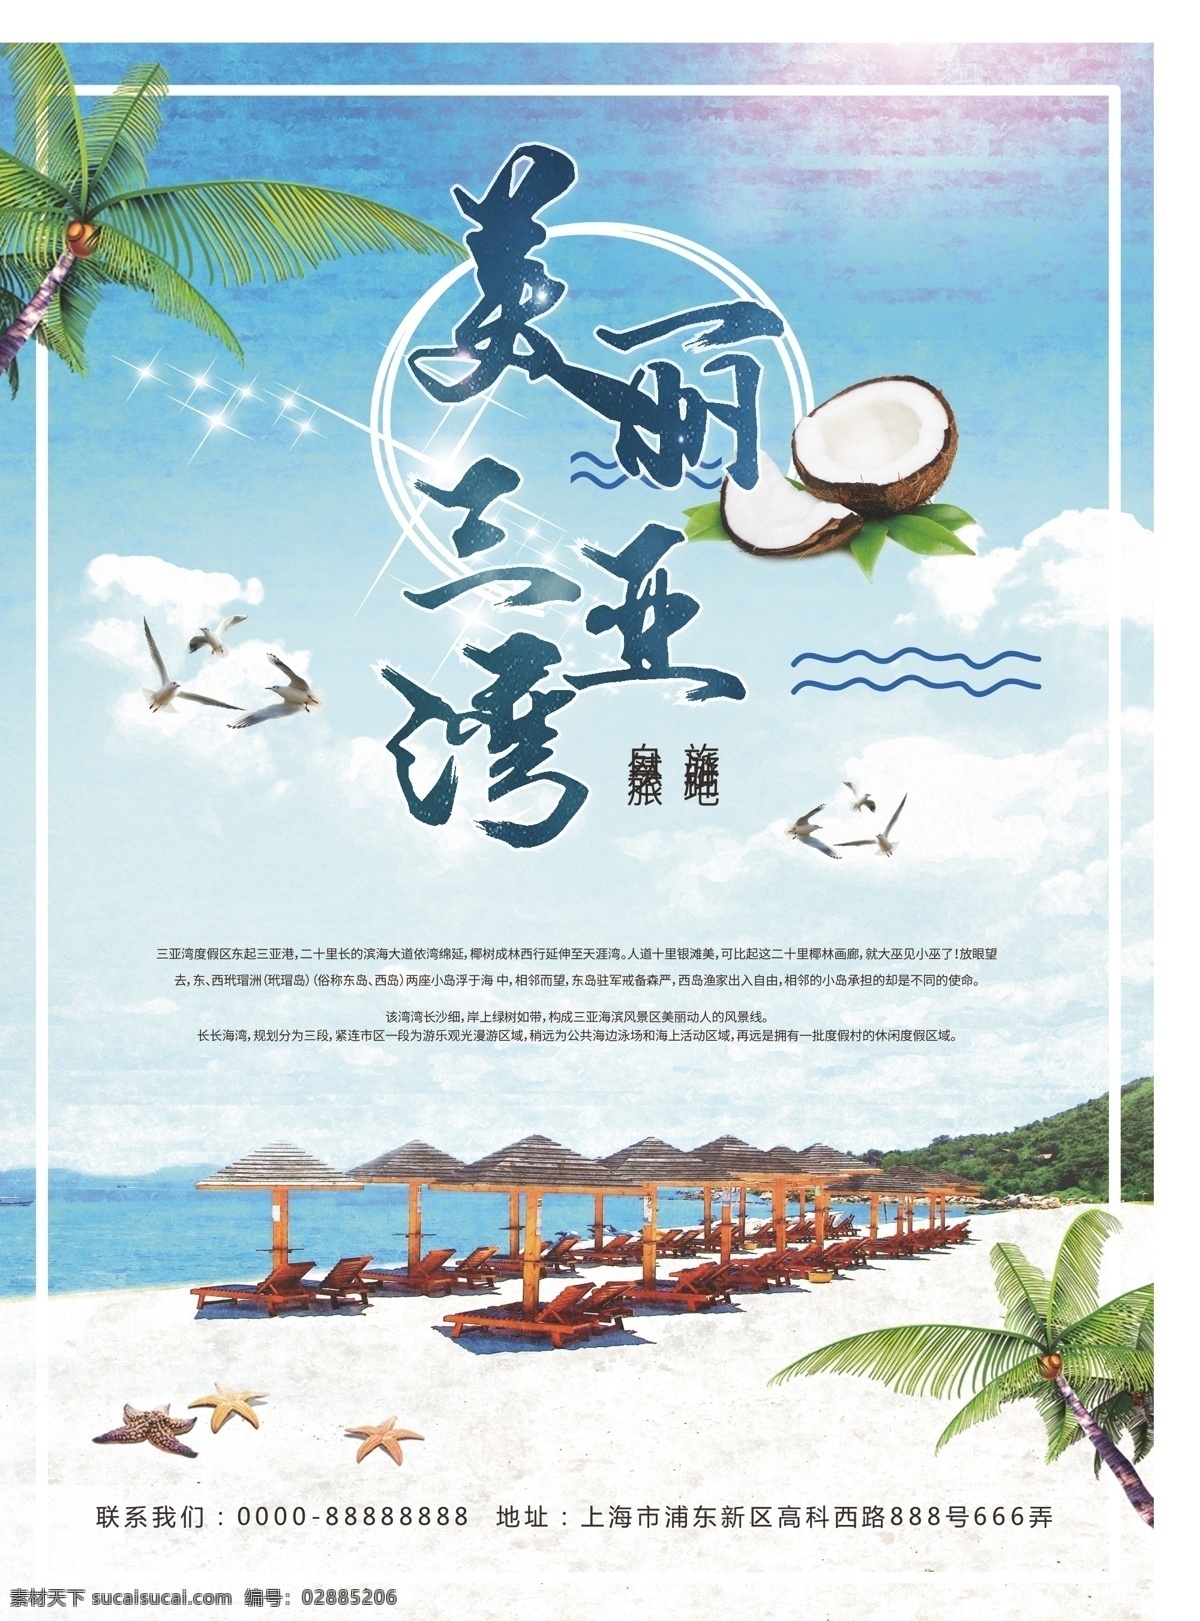 美丽 三亚湾 旅游景点 美丽三亚湾 旅游海报设计 清新阳光 沙滩 节假日